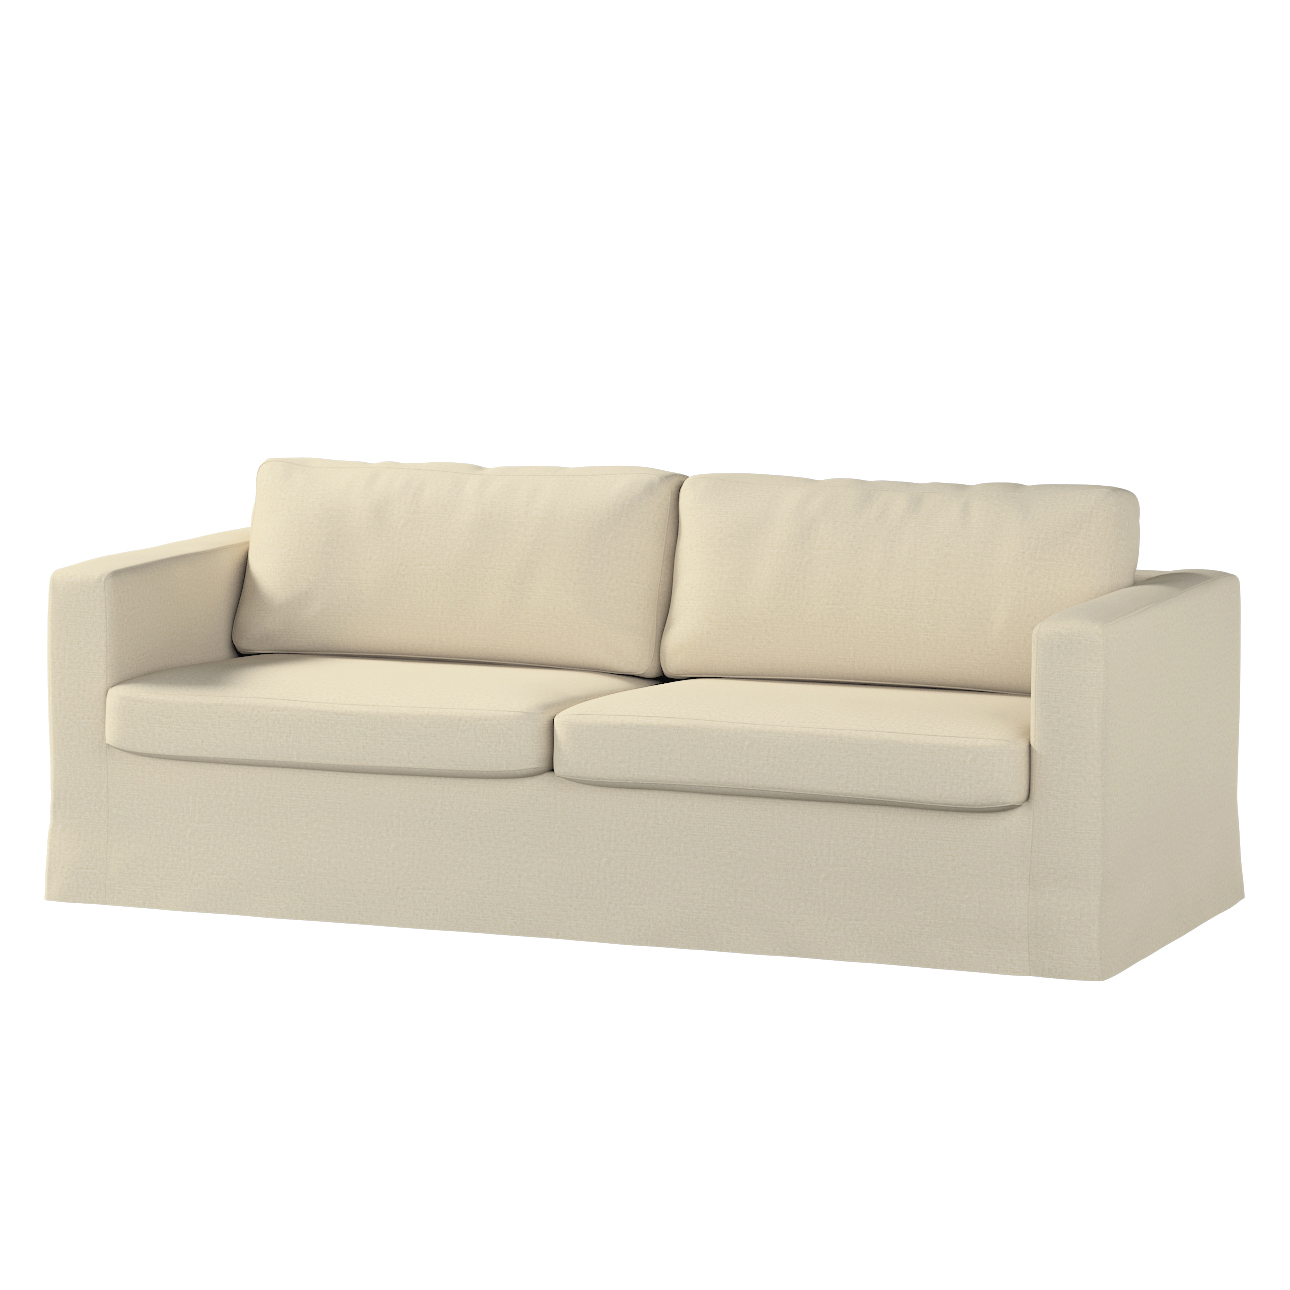 Bezug für Karlstad 3-Sitzer Sofa nicht ausklappbar, lang, ecru, Bezug für S günstig online kaufen